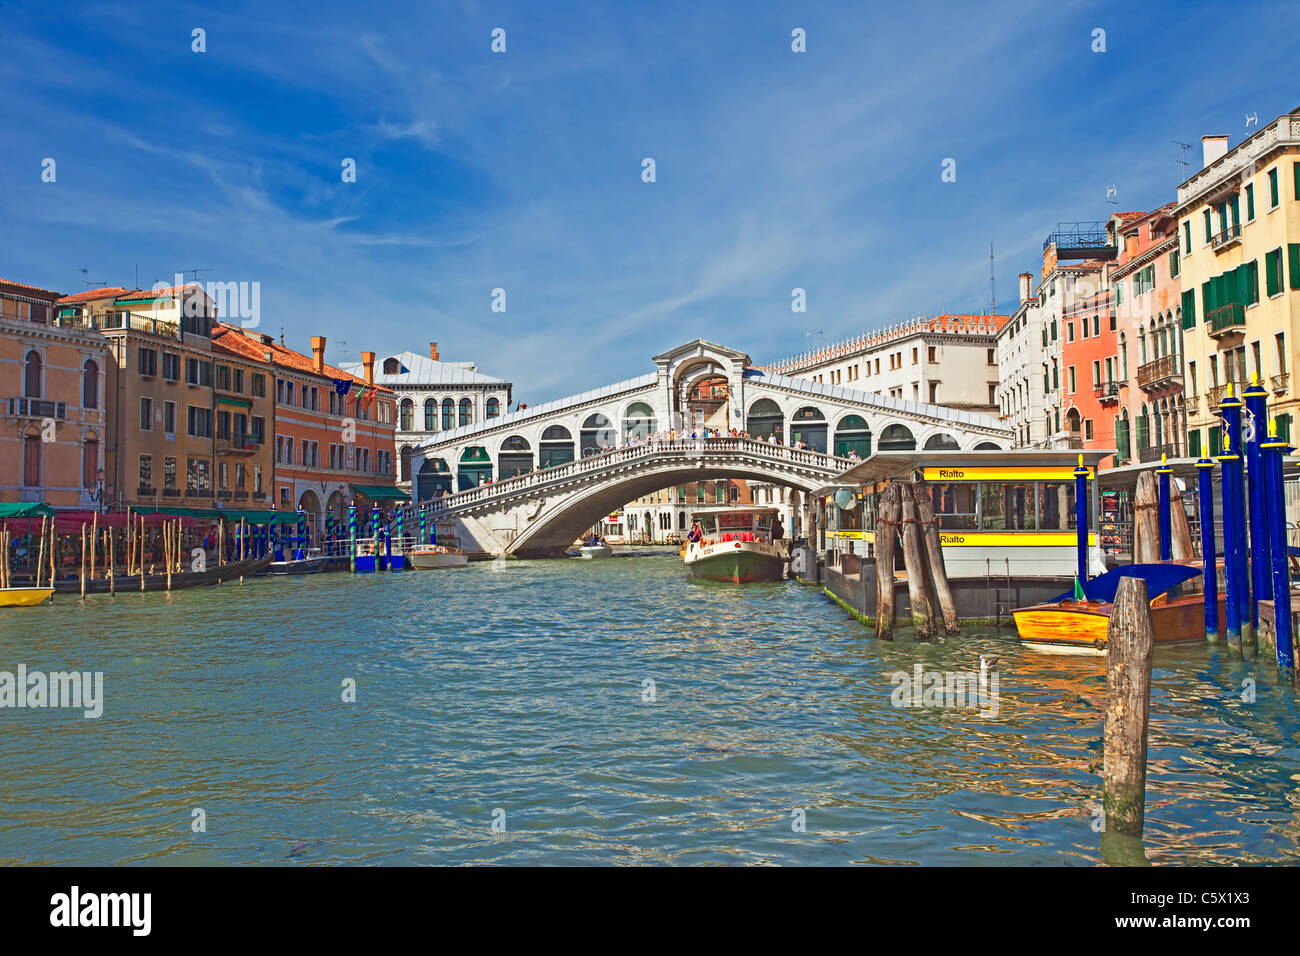 Ponte sul Canal Grande di Venezia, Italia. Ampio angolo immagine Mostra gli hotels di rivestimento del canale e vaporetti in viaggio Foto Stock